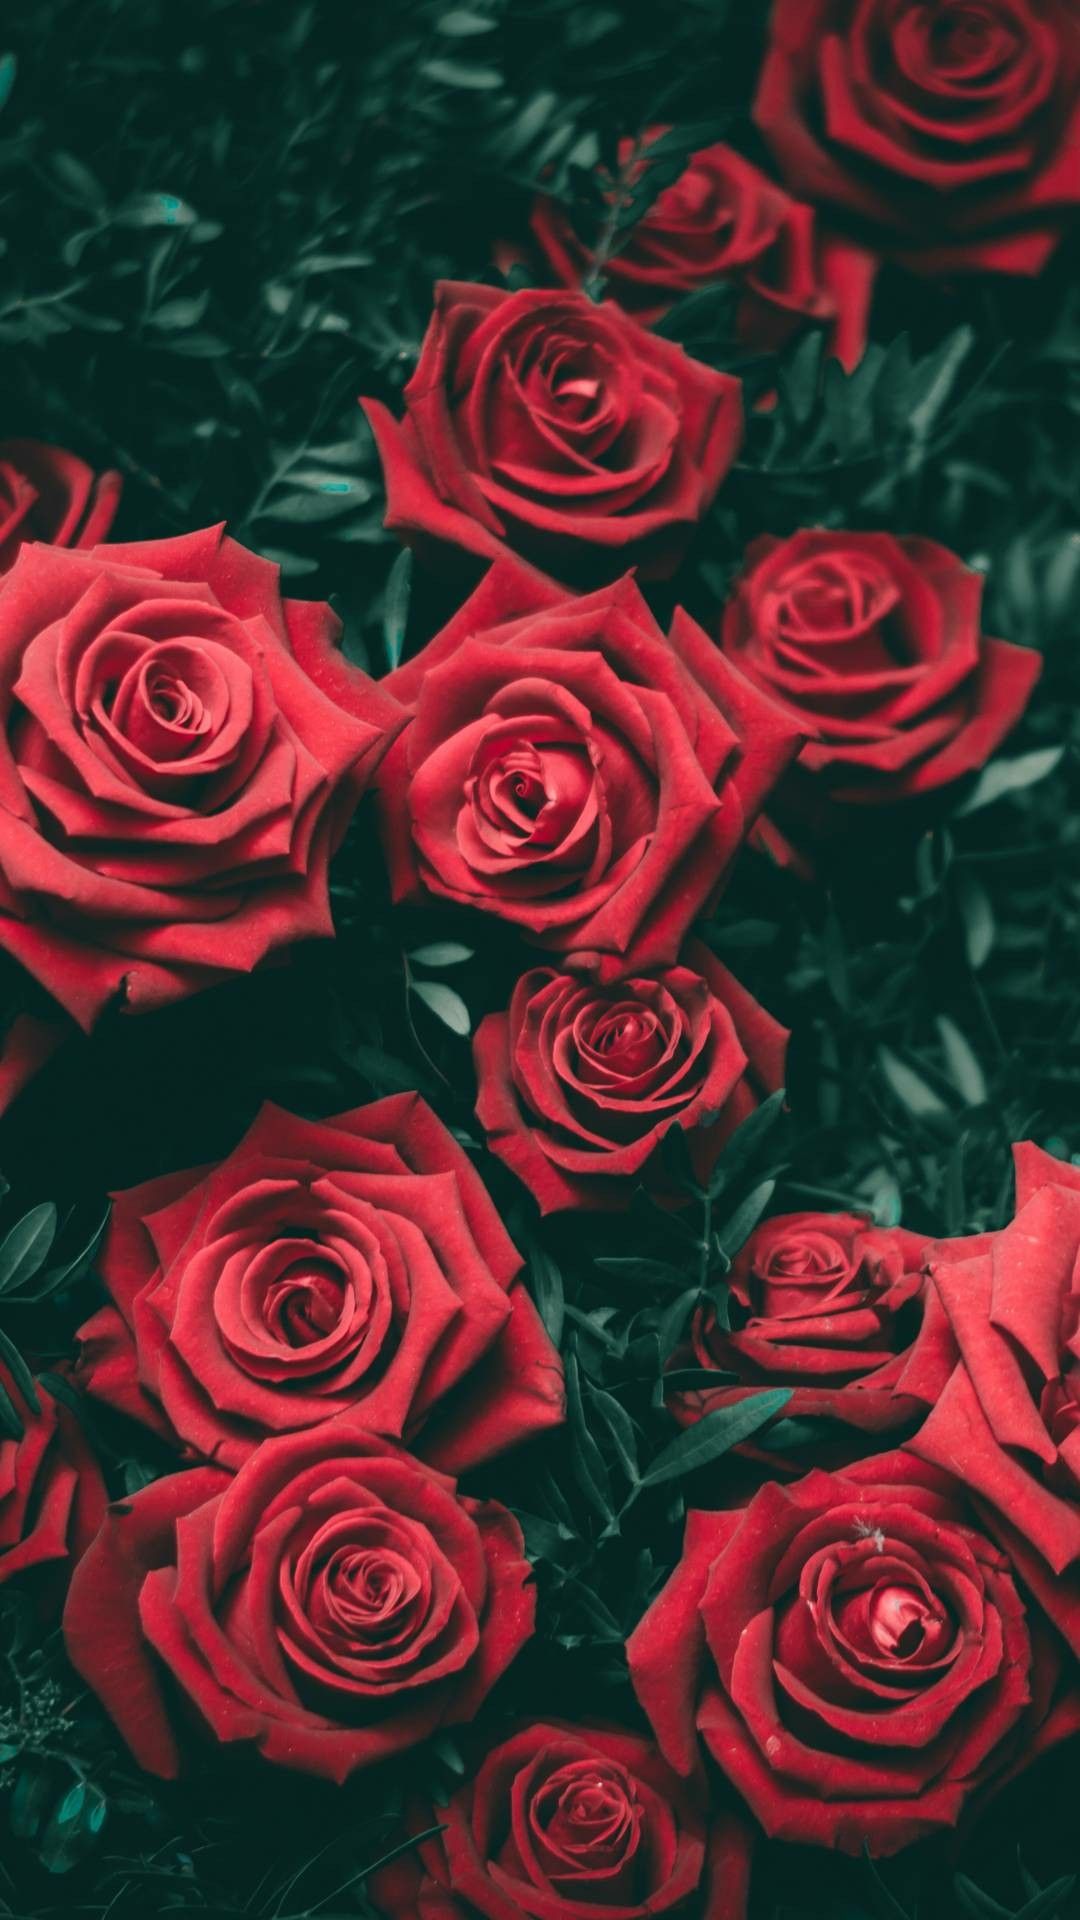 gül wallpaper,flower,rose,garden roses,red,floribunda